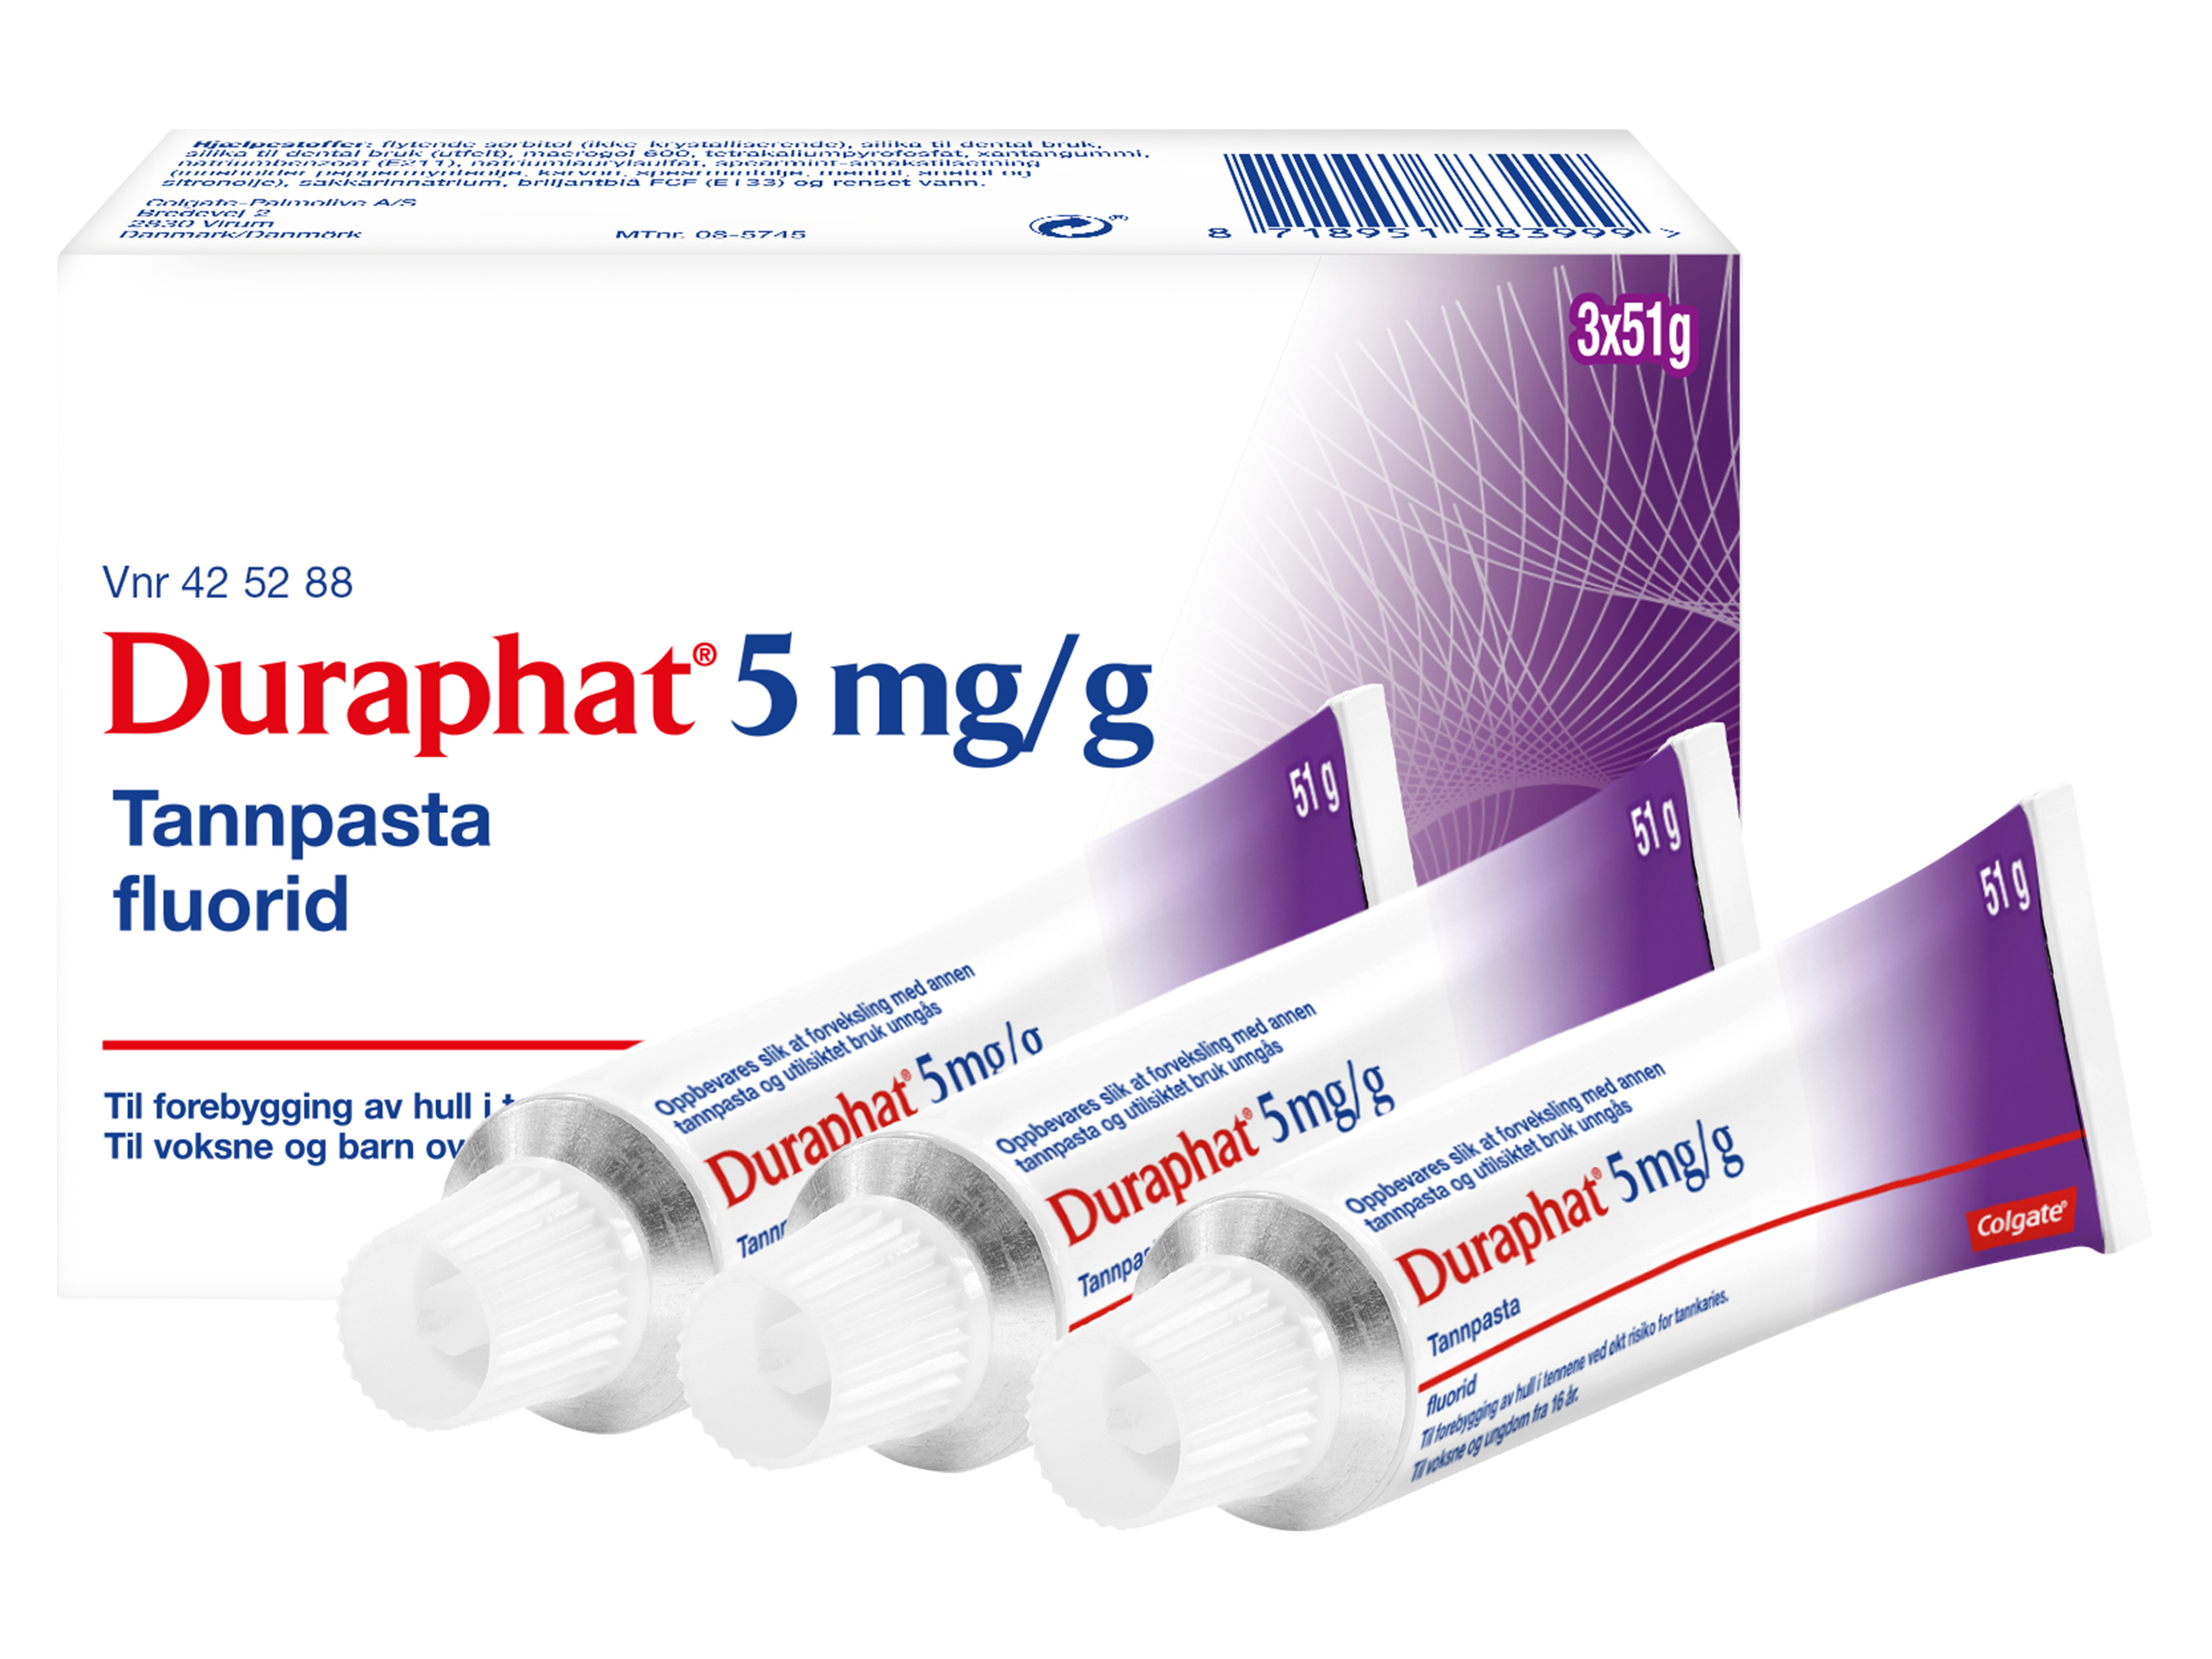 Duraphat Reseptfri fluortannpasta 5 mg/g, 3x51 gram